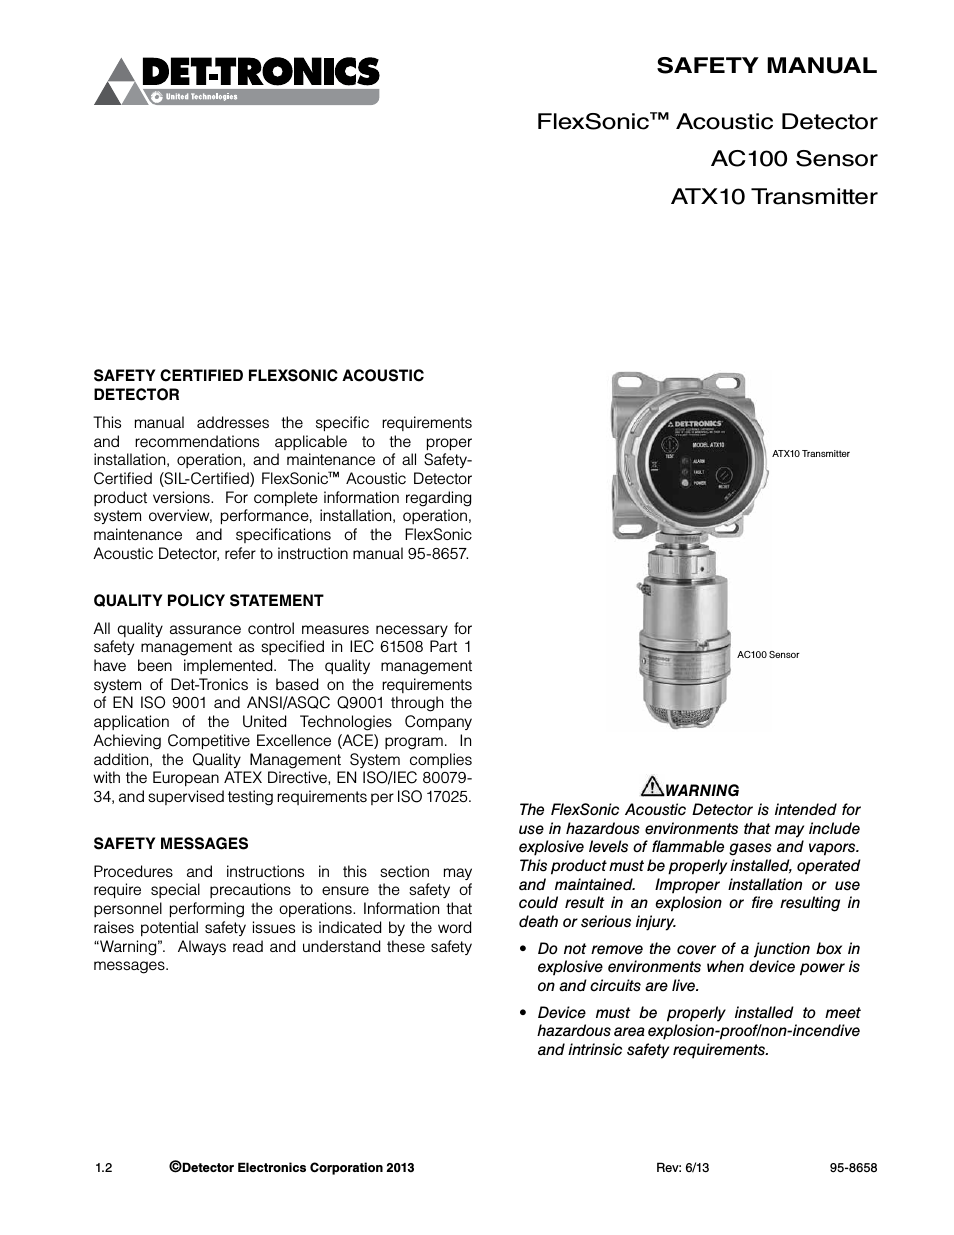 ATX10 Transmitter SAFETY MANUAL